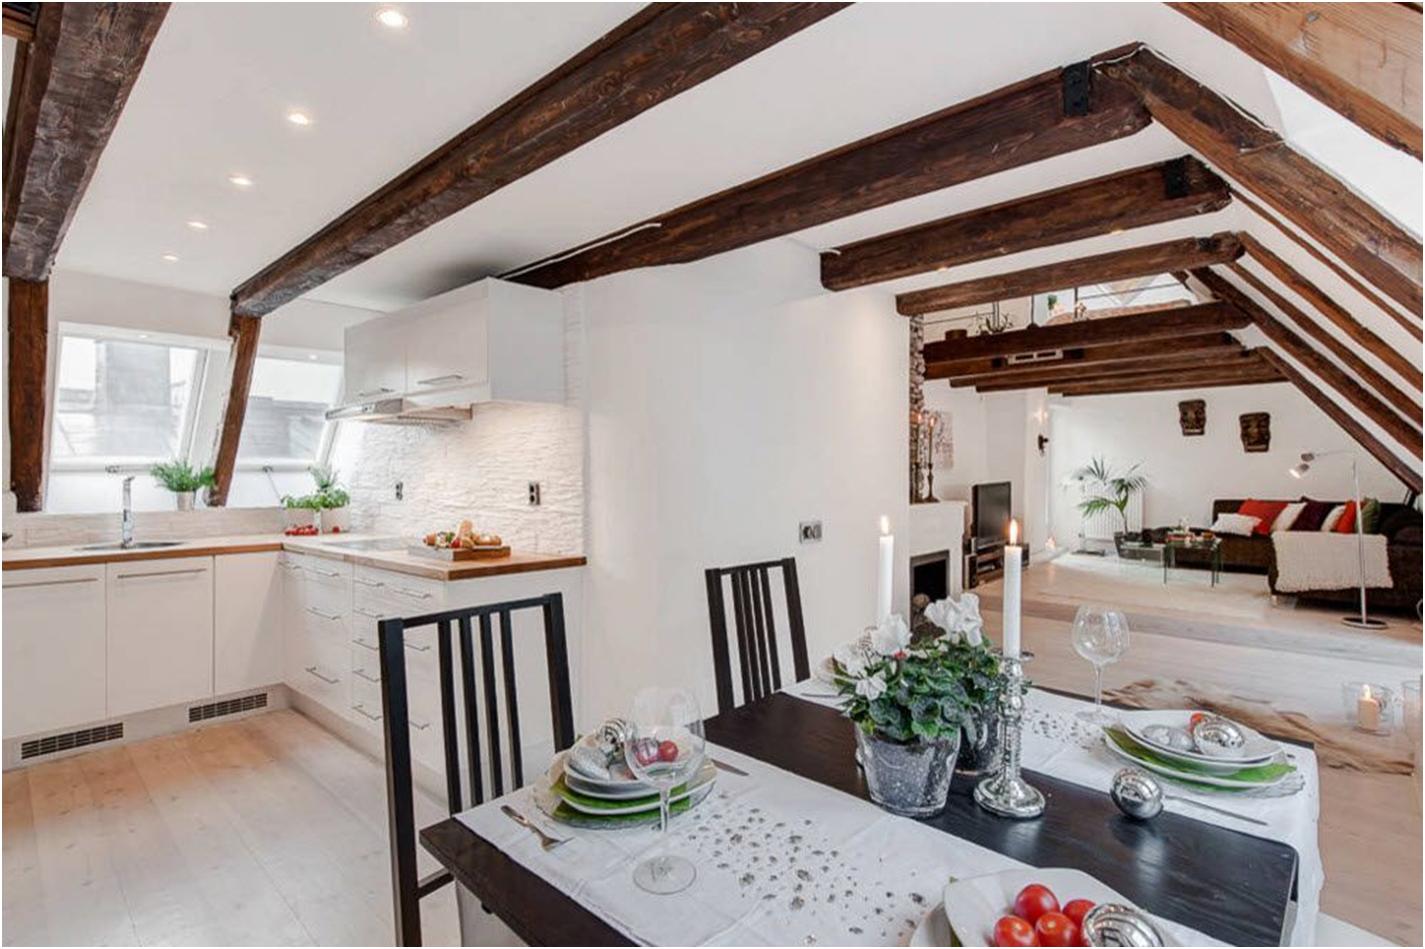 Потолок с балками на кухне – декоративные панели из дерева, гипсокартона